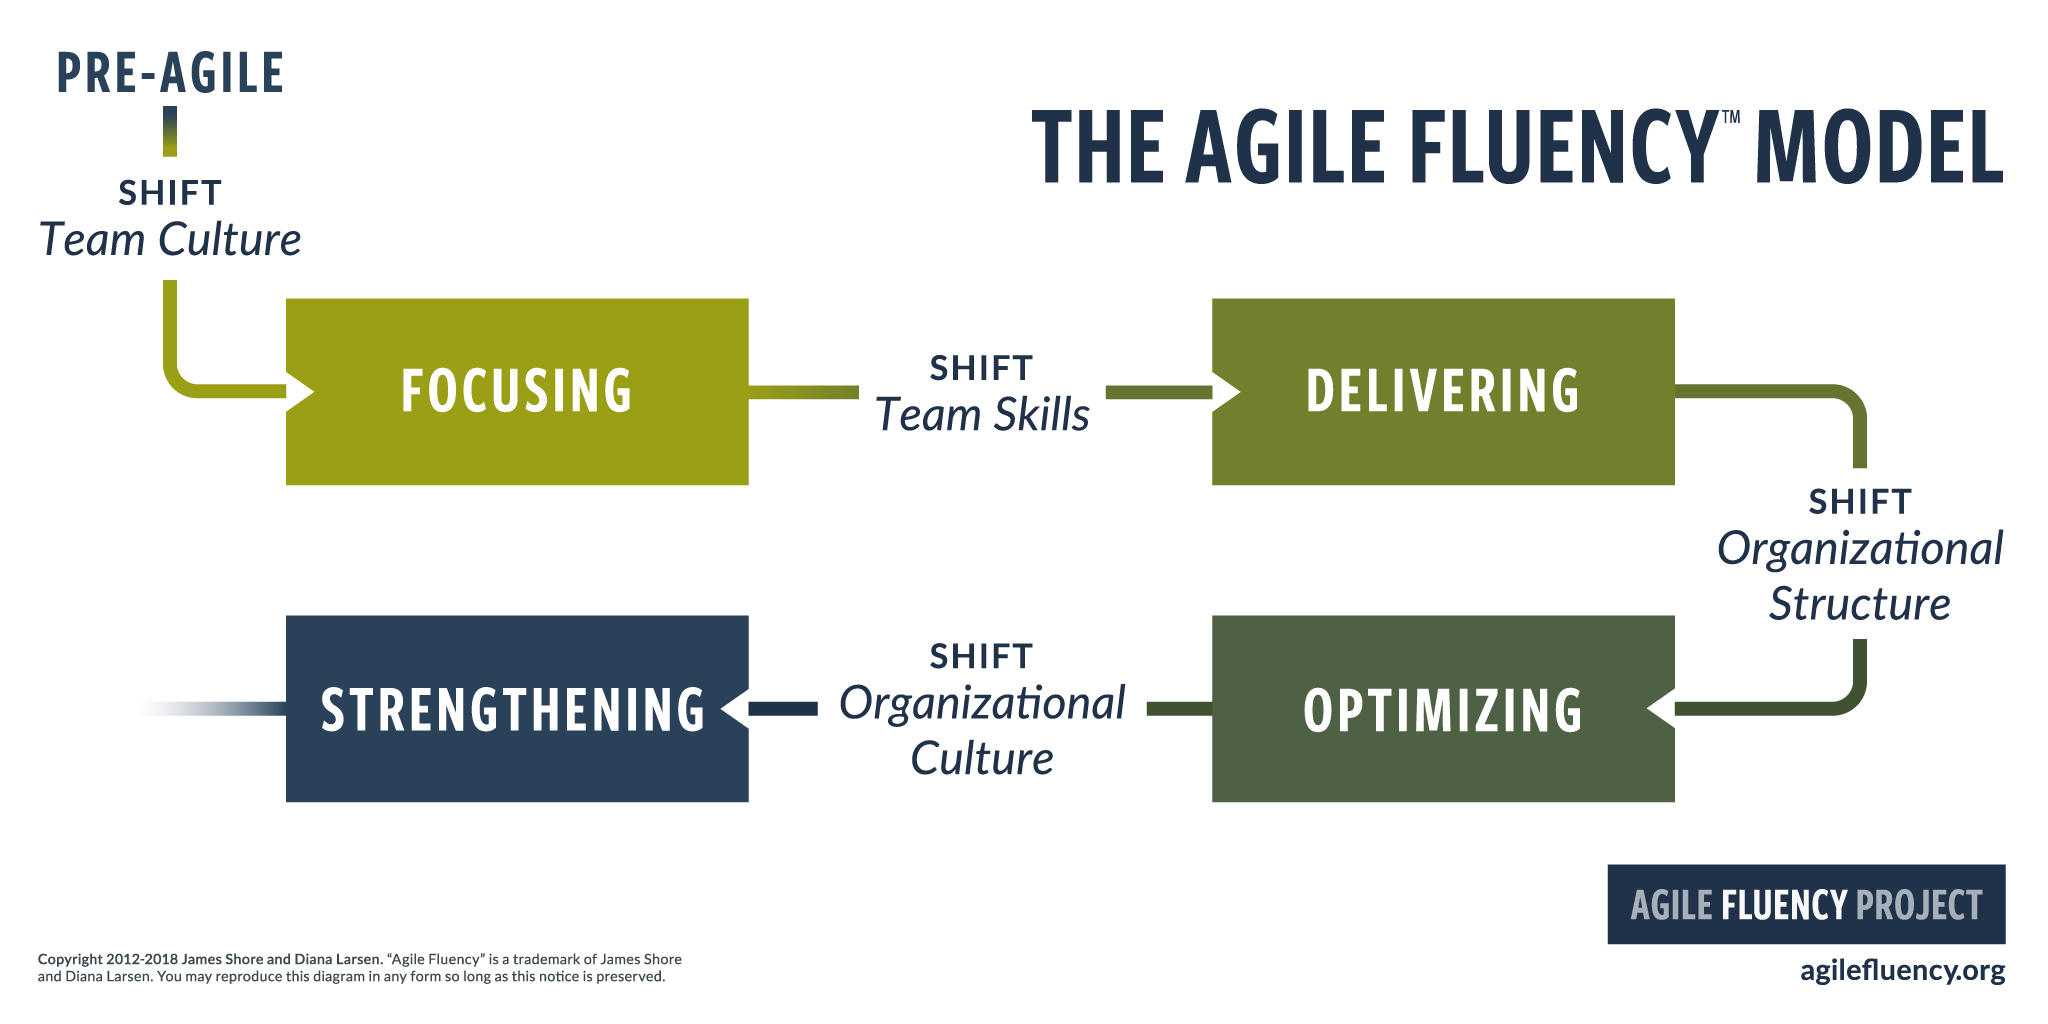 Le modèle Agile Fluency